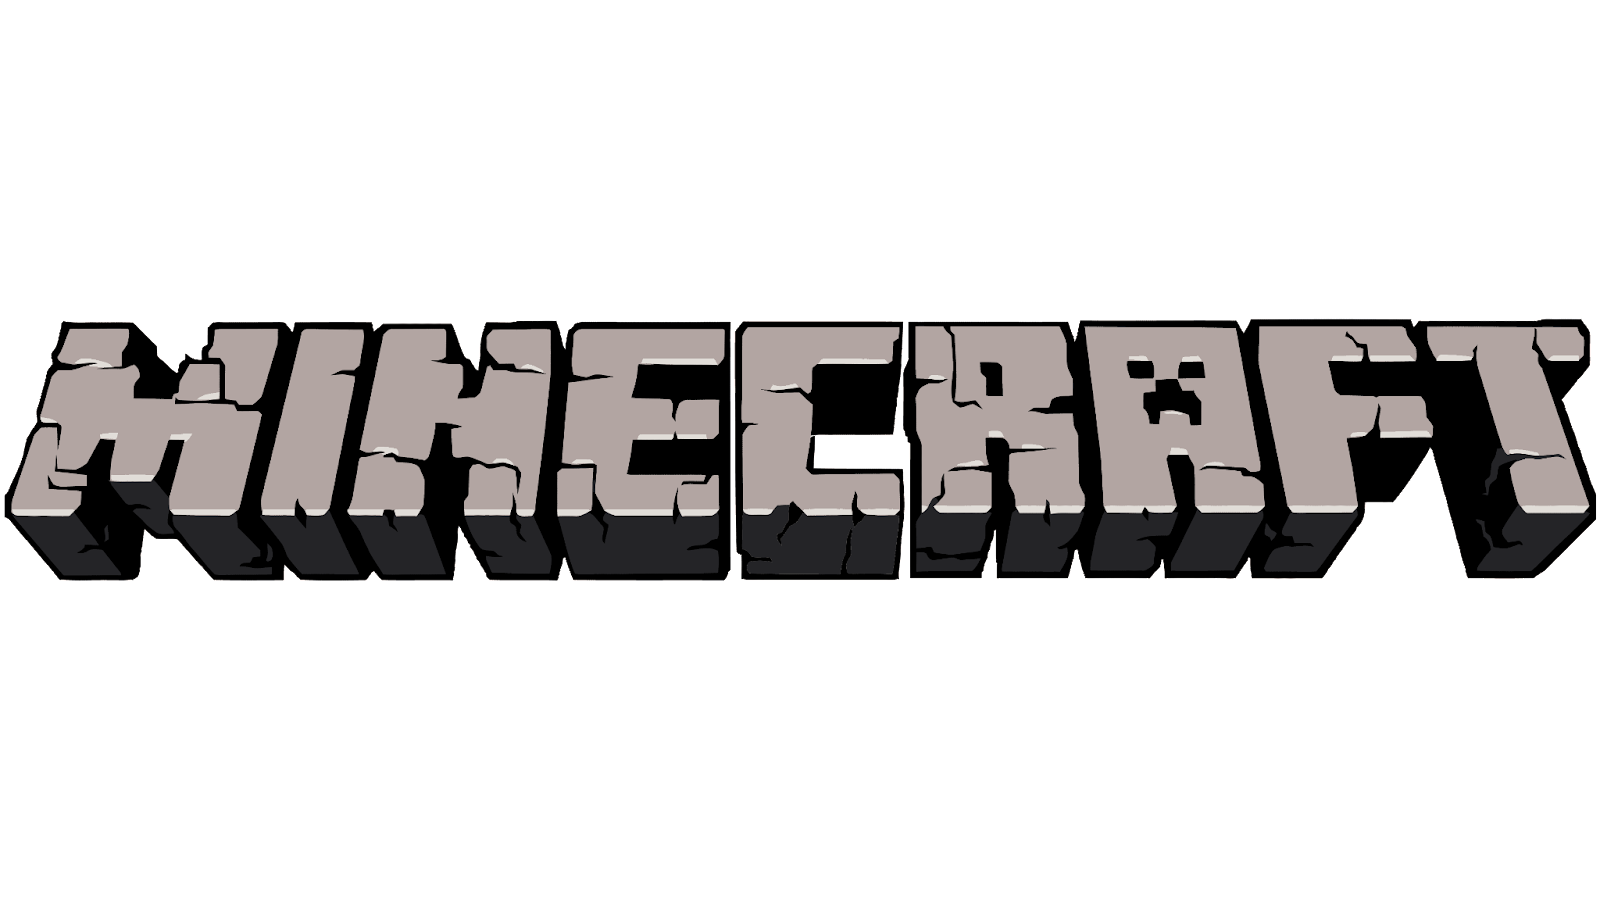 How to draw Minecraft Logo ✏️ - YouTube